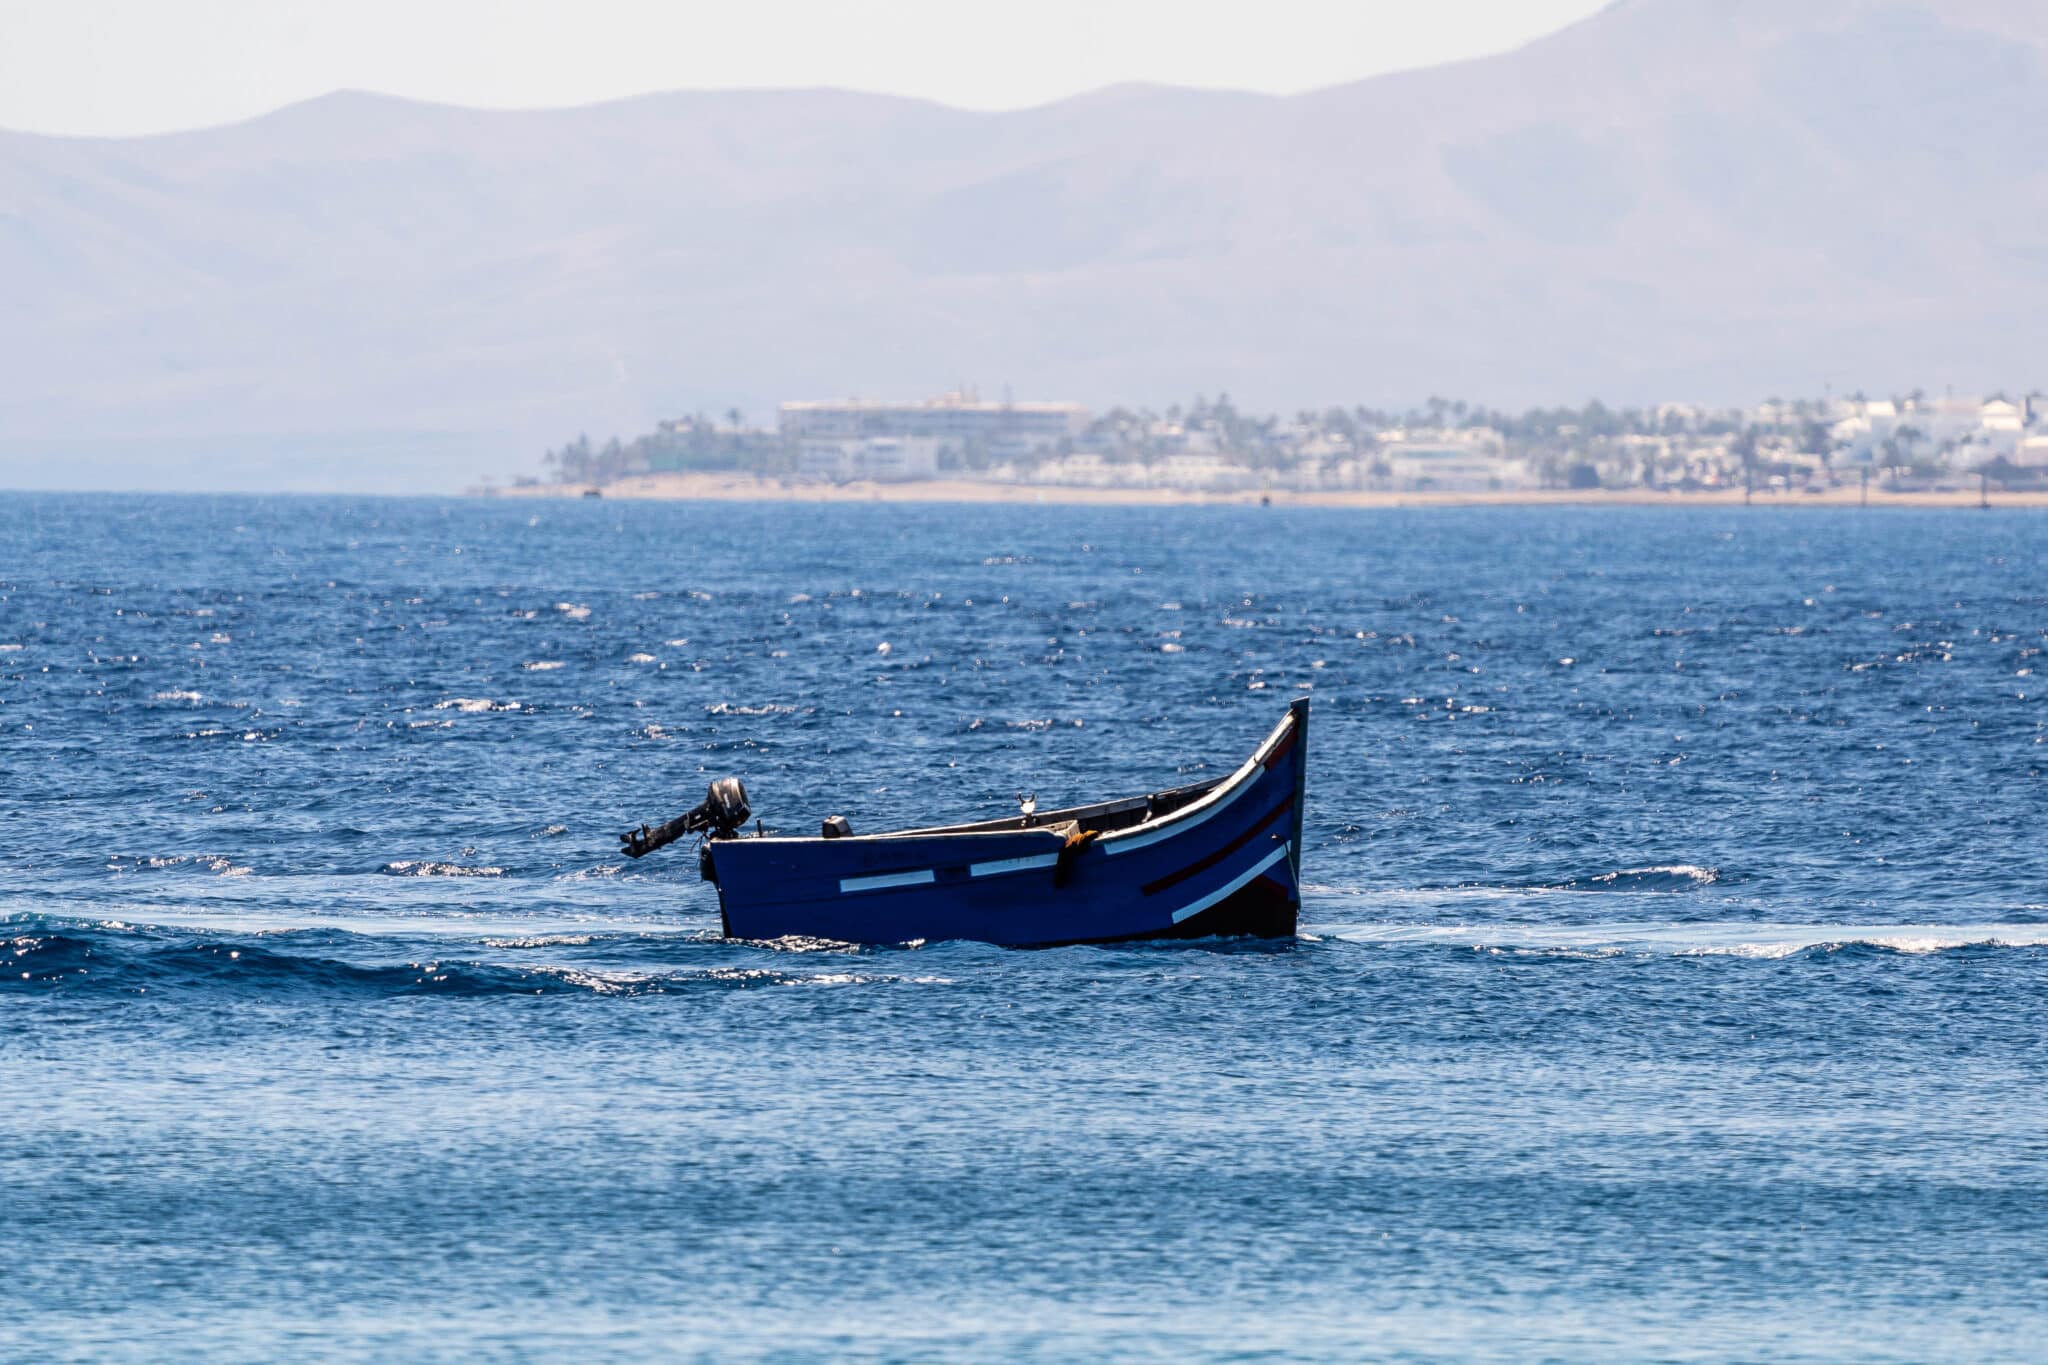 Fallece ahogado un hombre en playa Chica, en Lanzarote